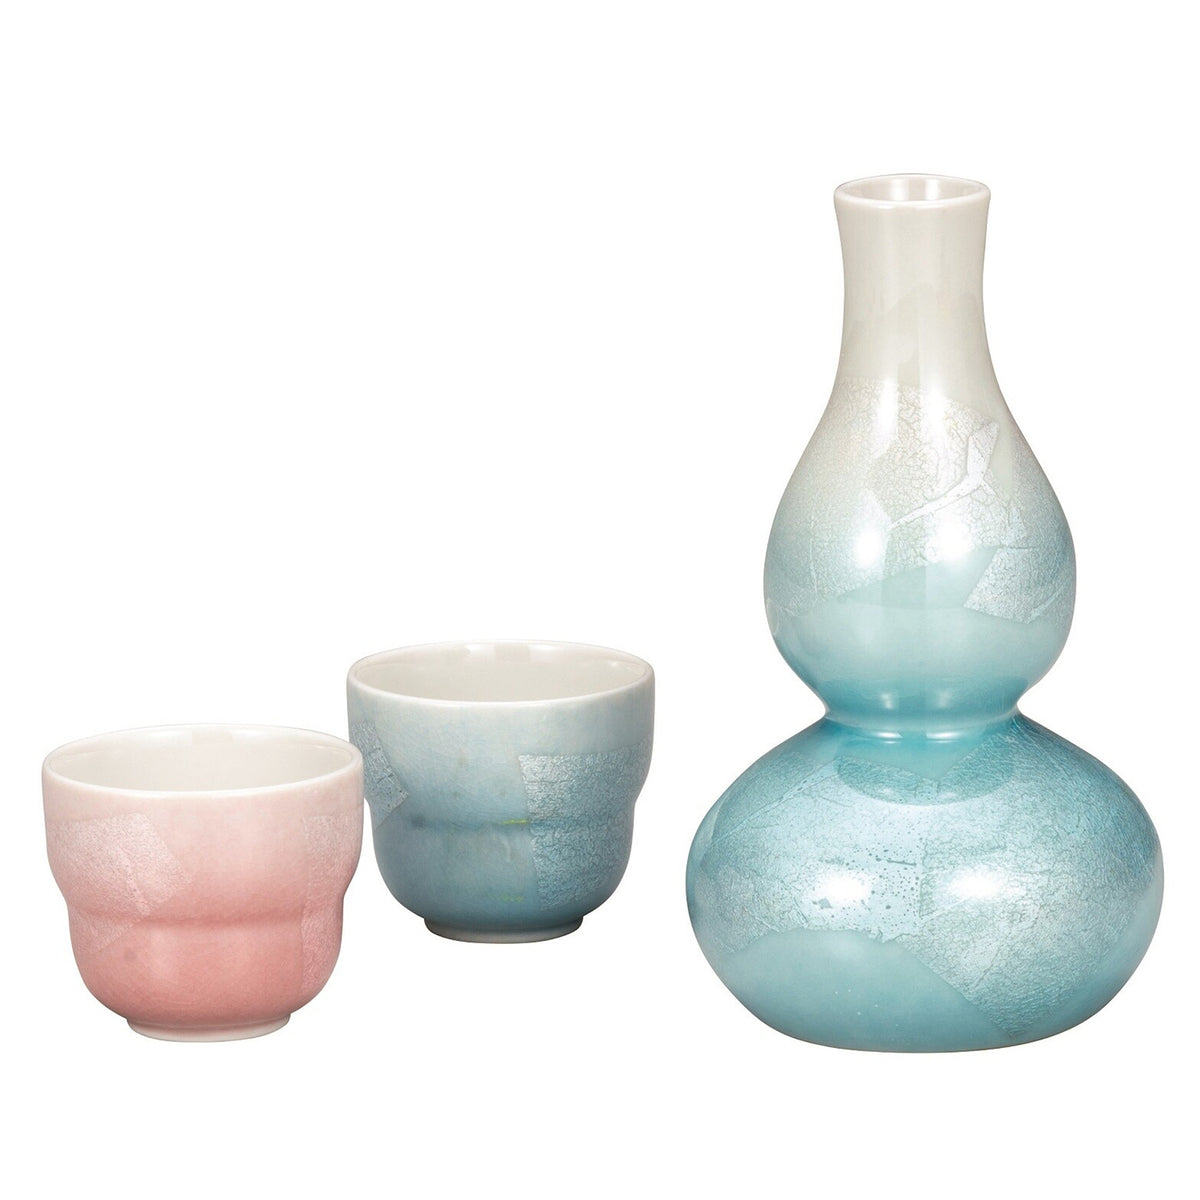 Kutani Ware Porcelain Sakeware Set  Gindami